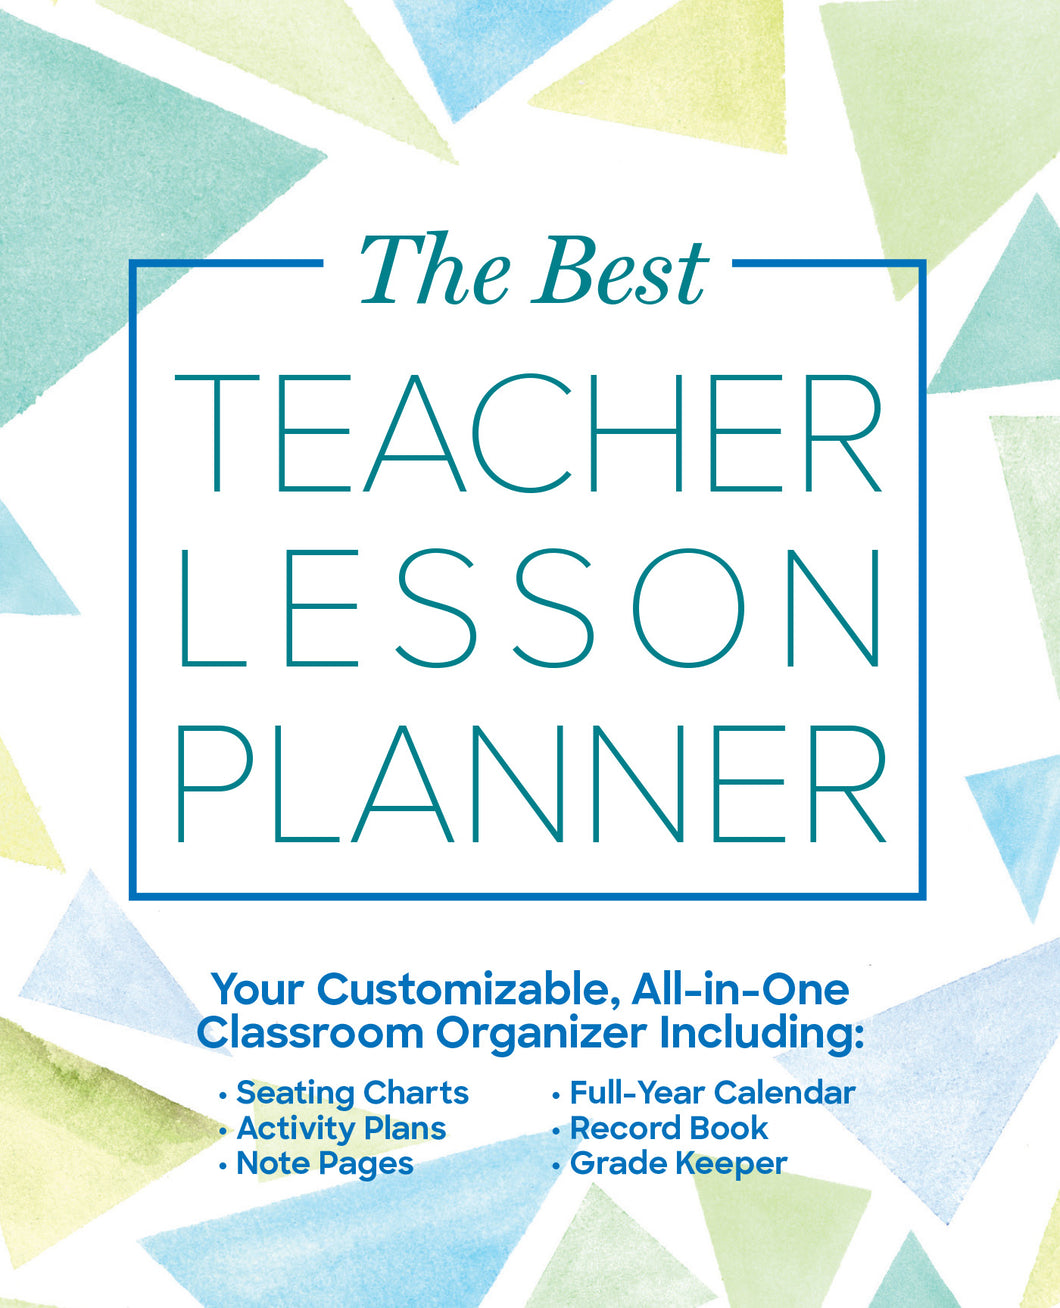 The Best Teacher Lesson Planner